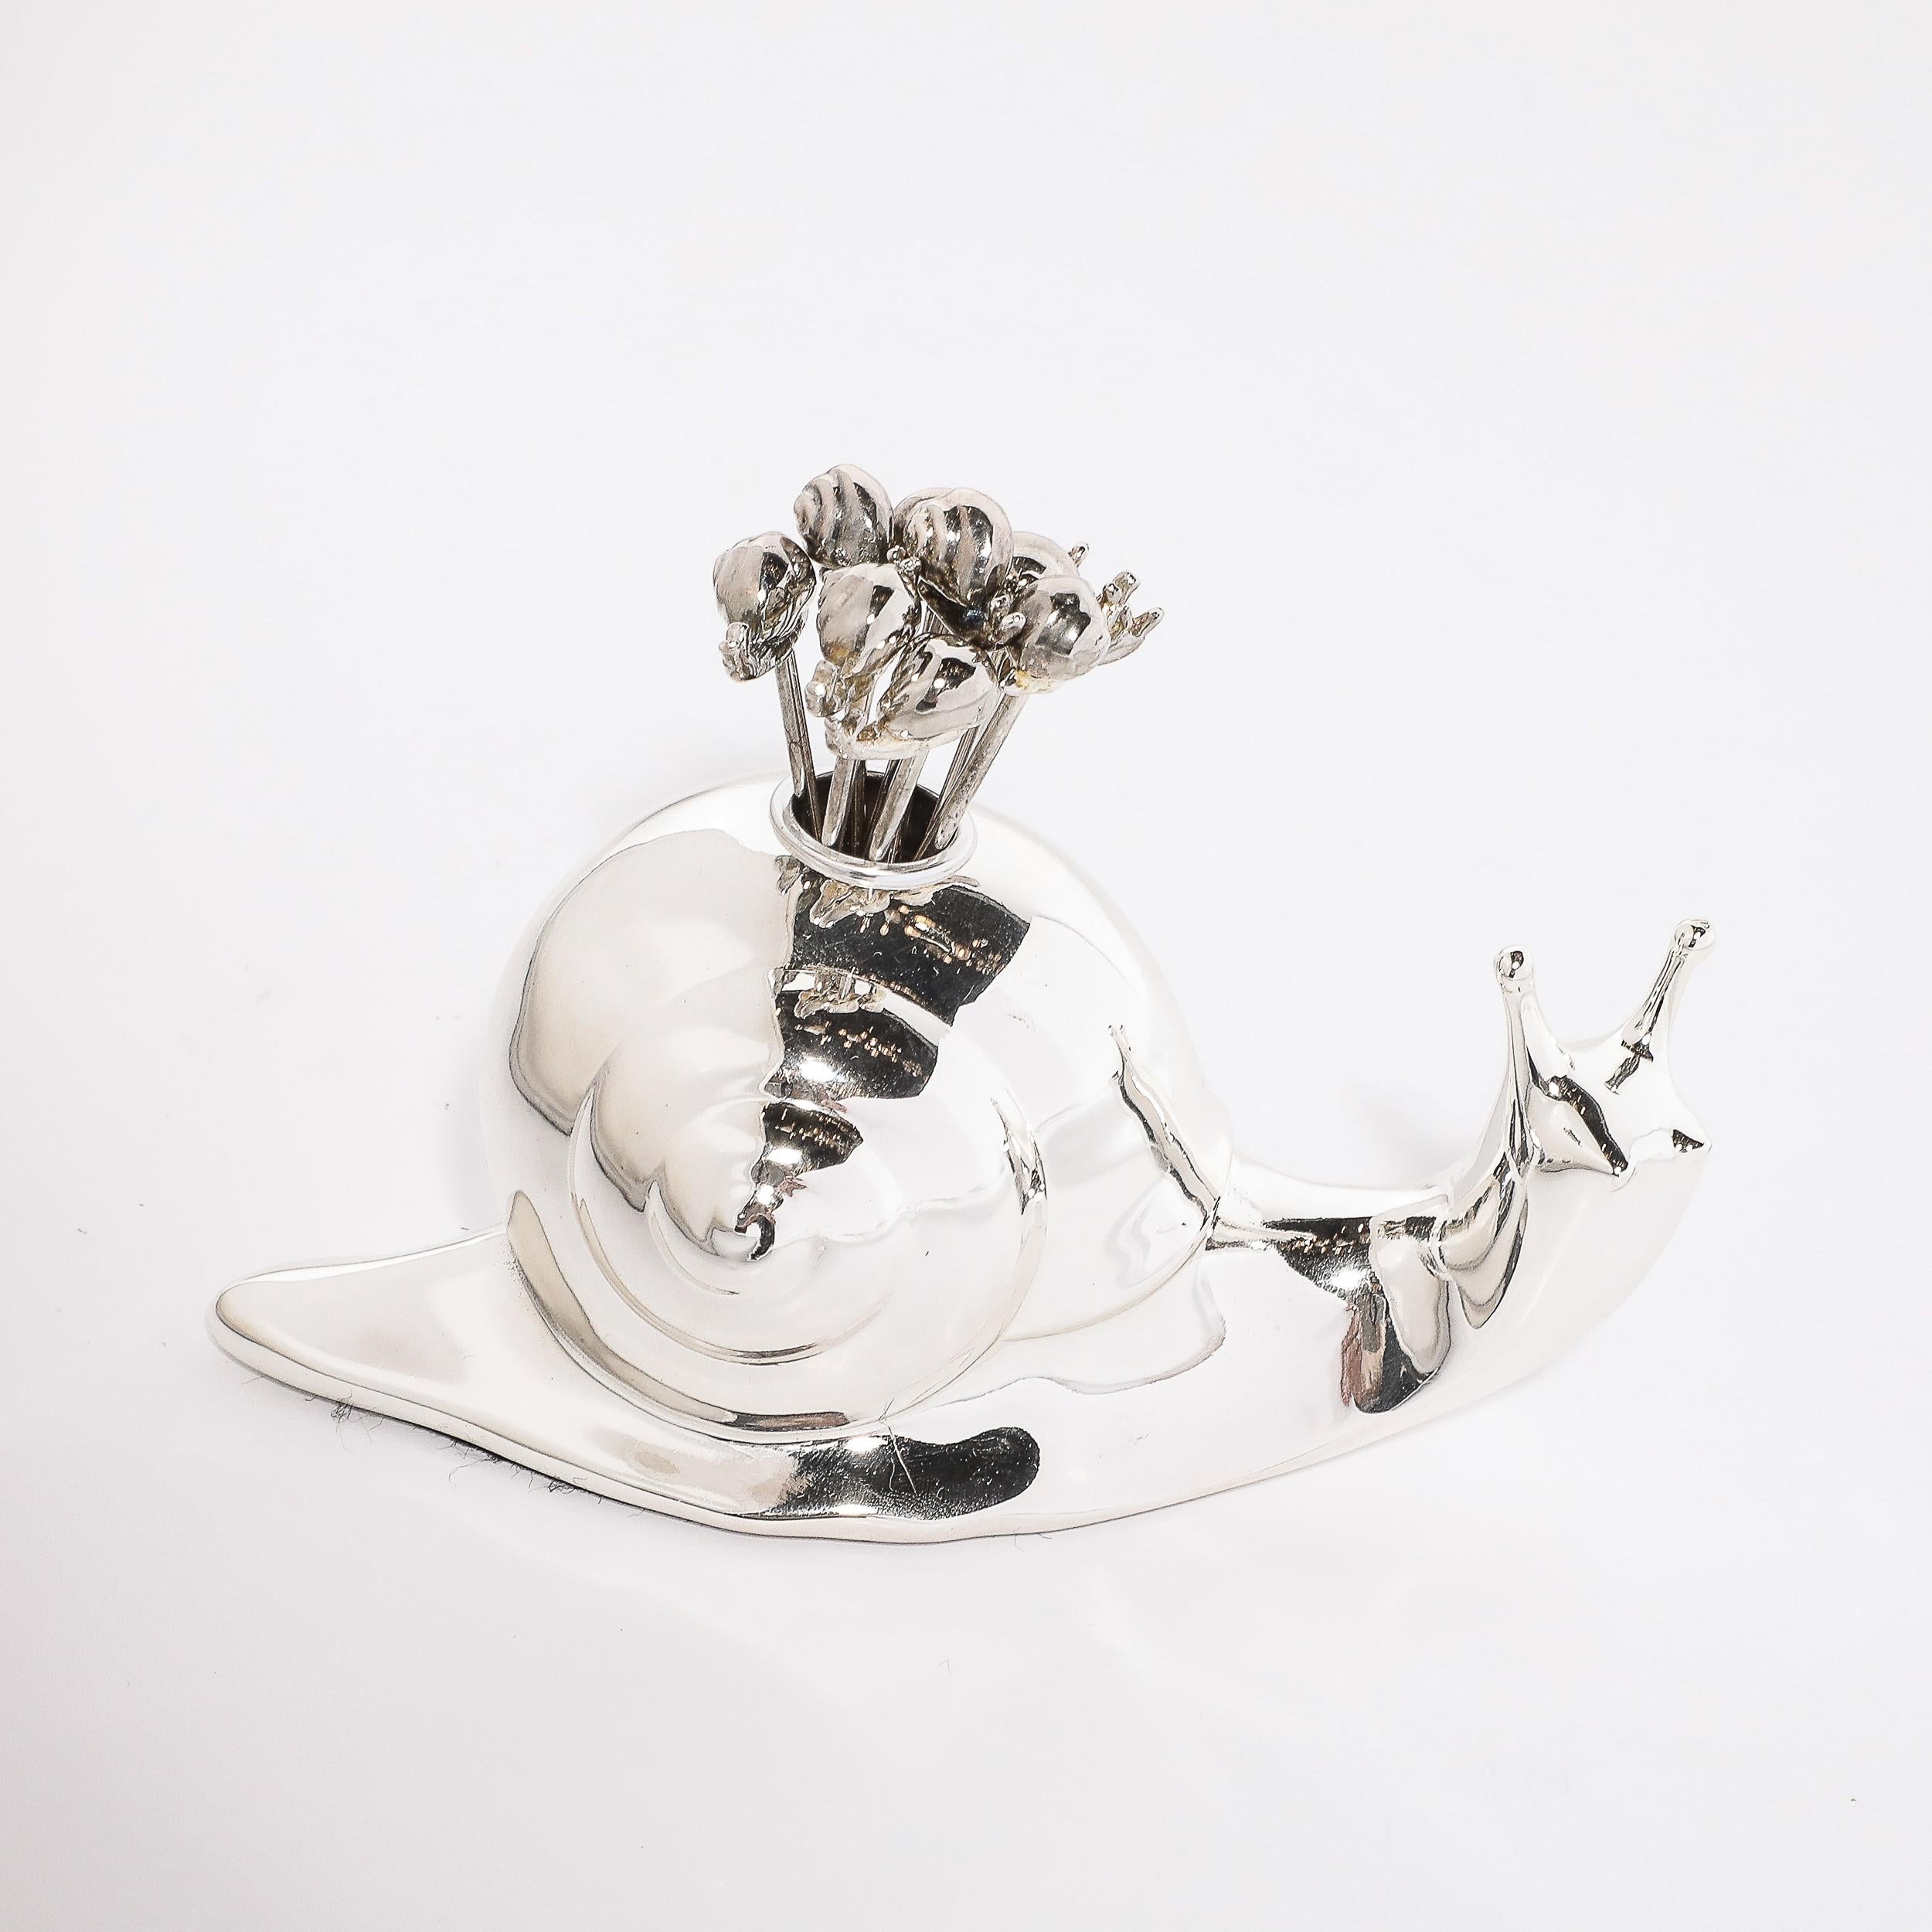 Cet élégant et fantaisiste pic à cocktail/ serveur à escargots Art déco chromé sculpté par Bejnamin Rabier provient des États-Unis, vers 1930. La forme sculpturale arrondie représente un escargot avec la tête légèrement tournée vers la droite, le